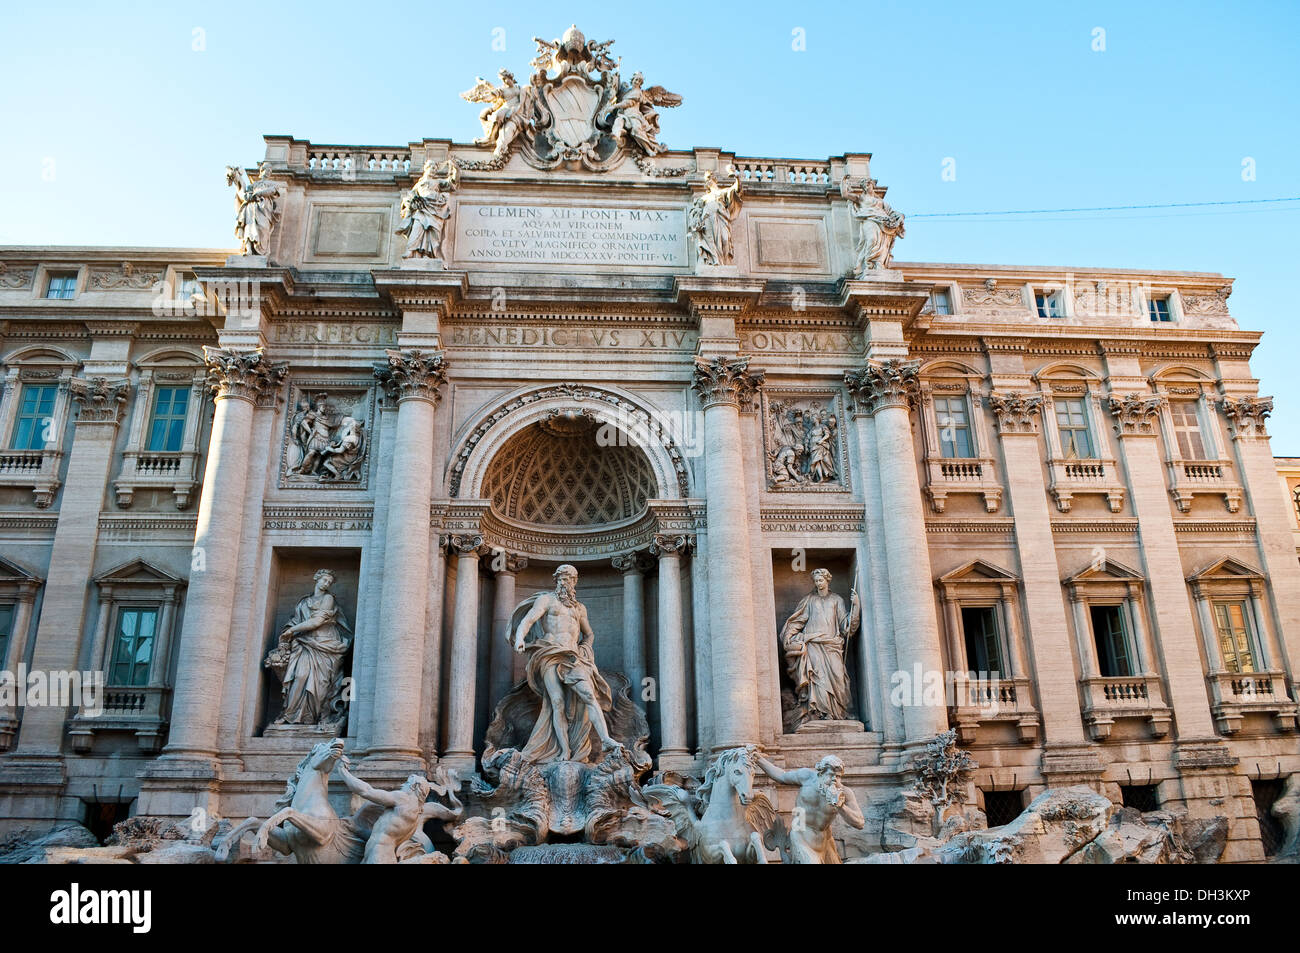 Fontaine de Trévi - Piazza di Spagna, Rome, Italie Banque D'Images